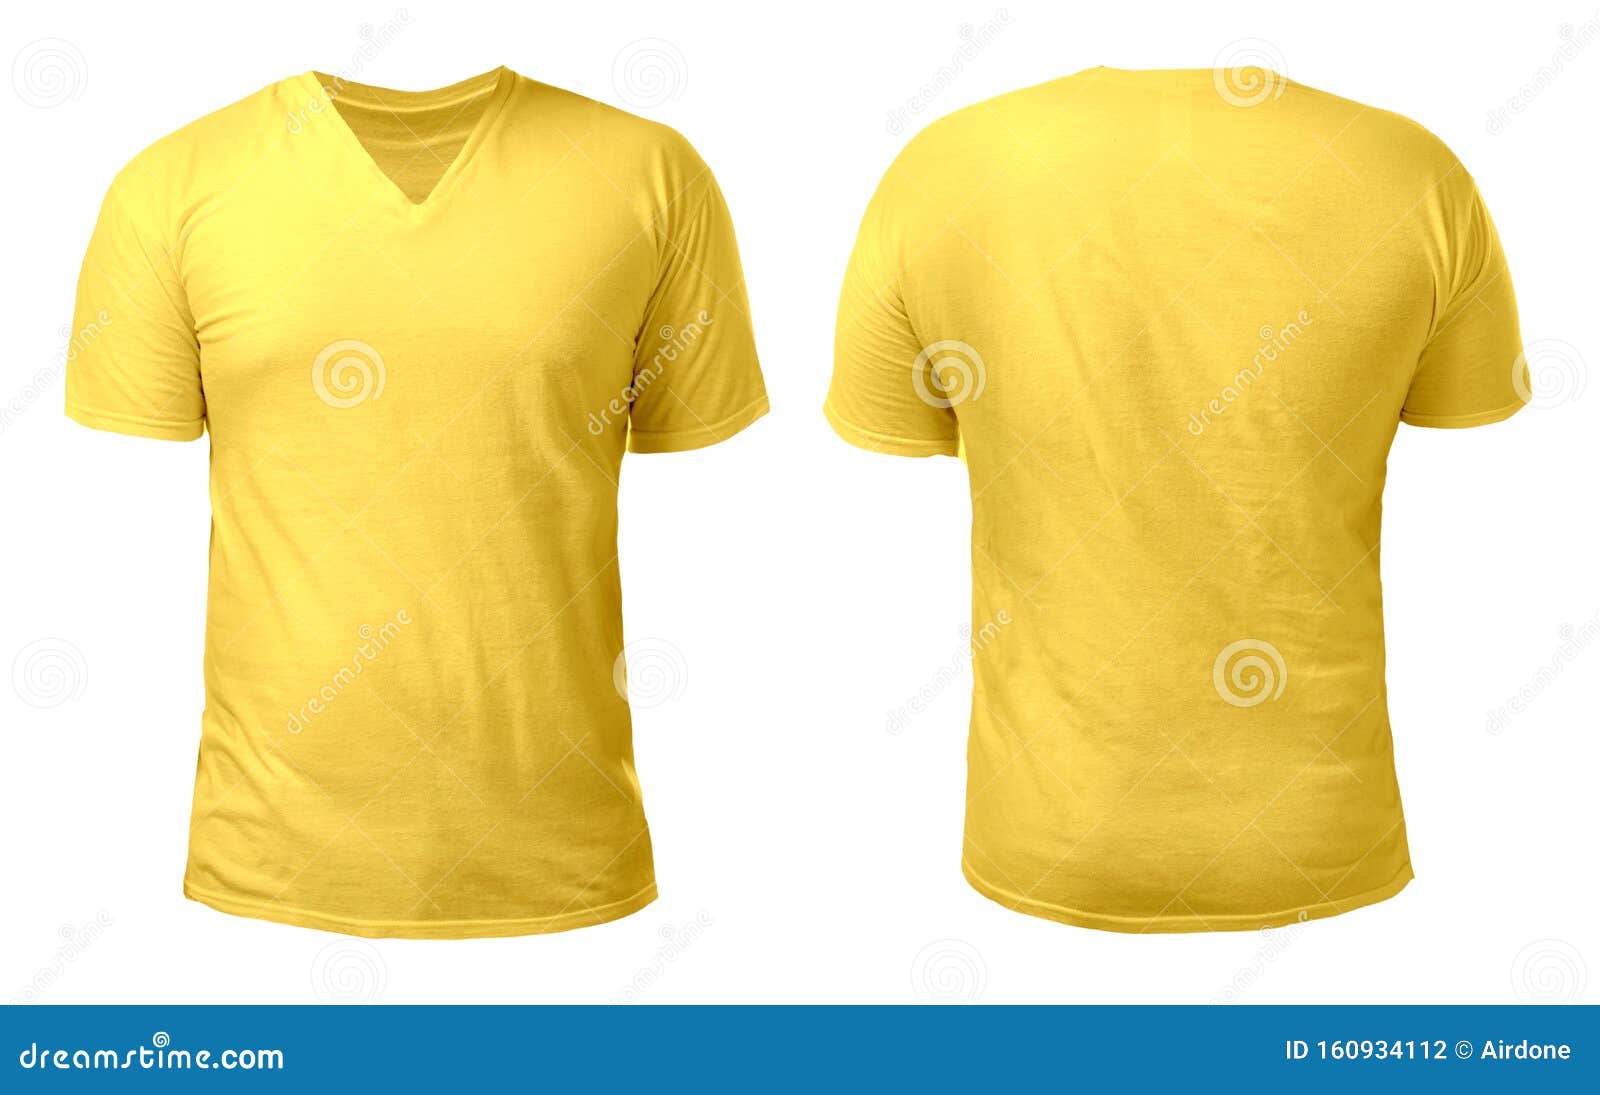 https://thumbs.dreamstime.com/z/plantilla-de-dise%C3%B1o-camisas-amarillas-cuello-v-camisetas-en-el-y-frente-aisladas-modelo-masculina-usa-camisa-amarilla-lisa-lotes-160934112.jpg